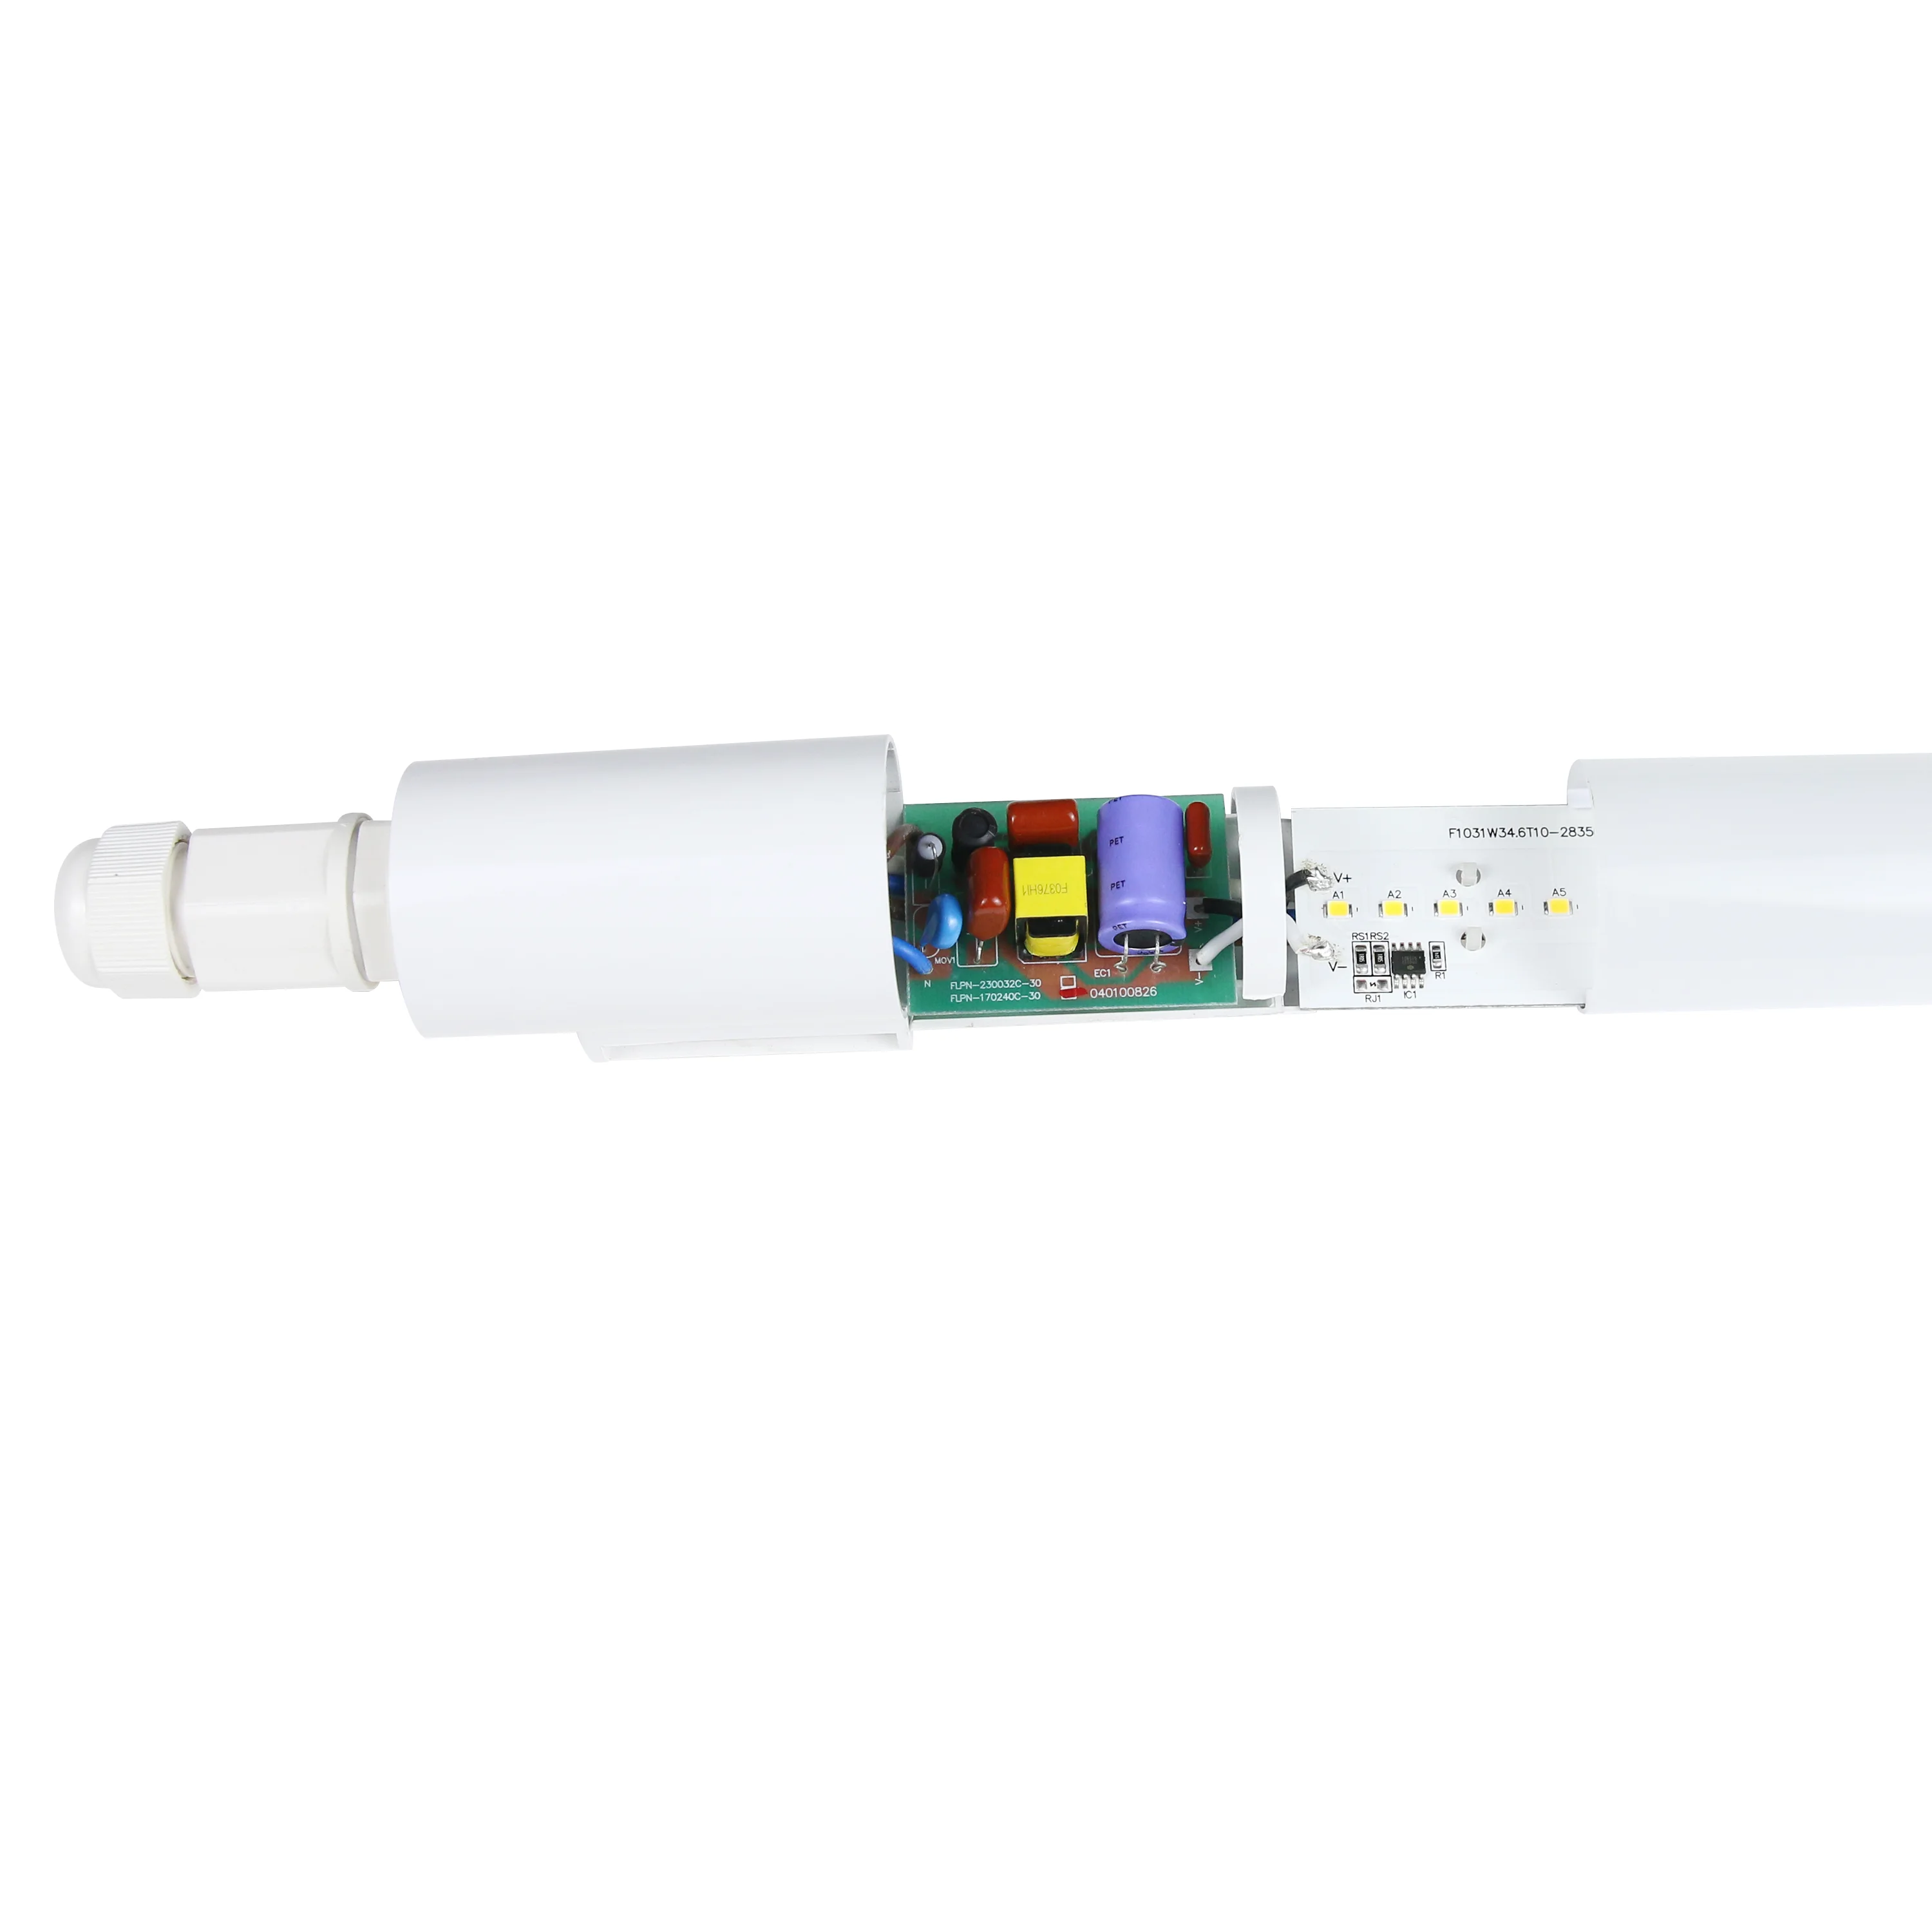 LED Linear Light IP65 IK08 140lm/w Linkable Batten Light Flicker free OEM Waterproof Light Fixtures